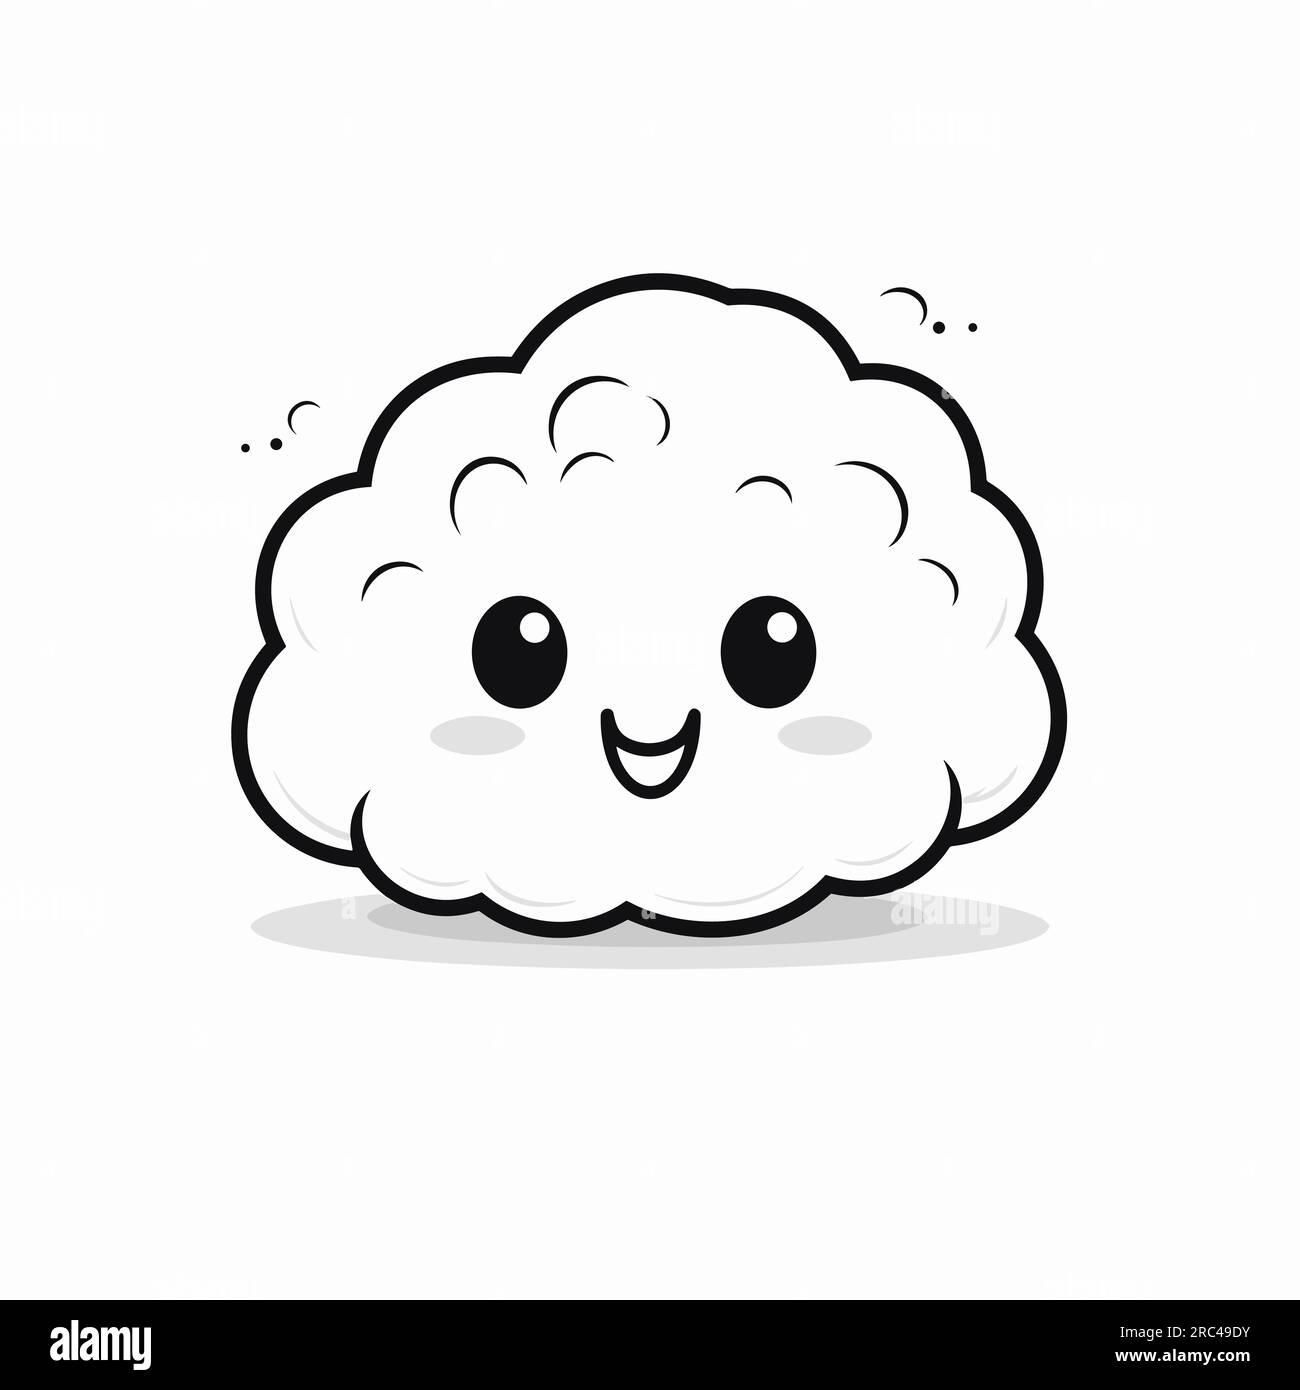 Cloud. Illustrazione fumettistica disegnata a mano su cloud. Illustrazione di cartoni animati in stile doodle vettoriale Illustrazione Vettoriale